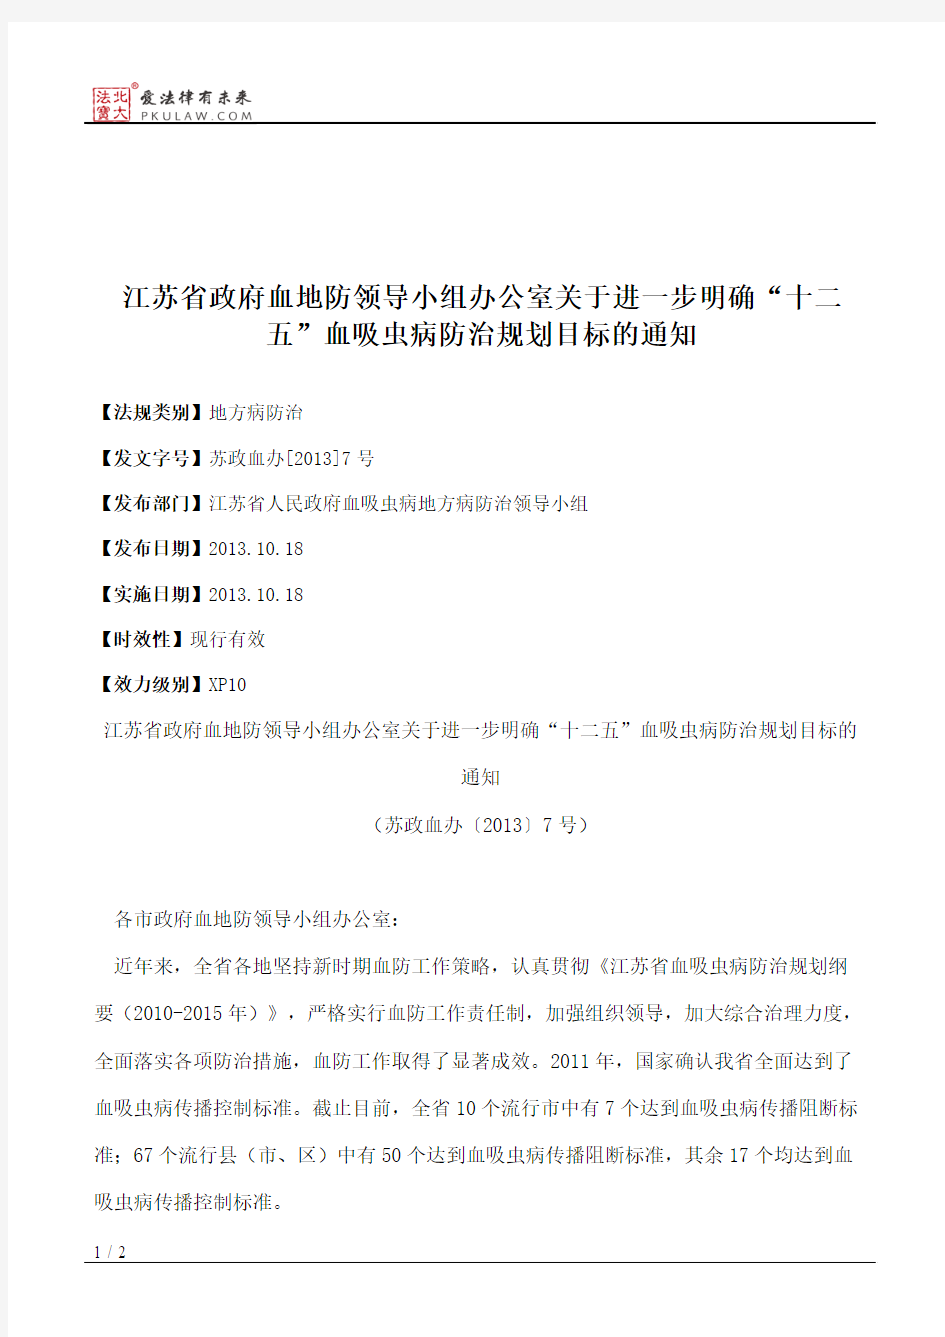 江苏省政府血地防领导小组办公室关于进一步明确“十二五”血吸虫